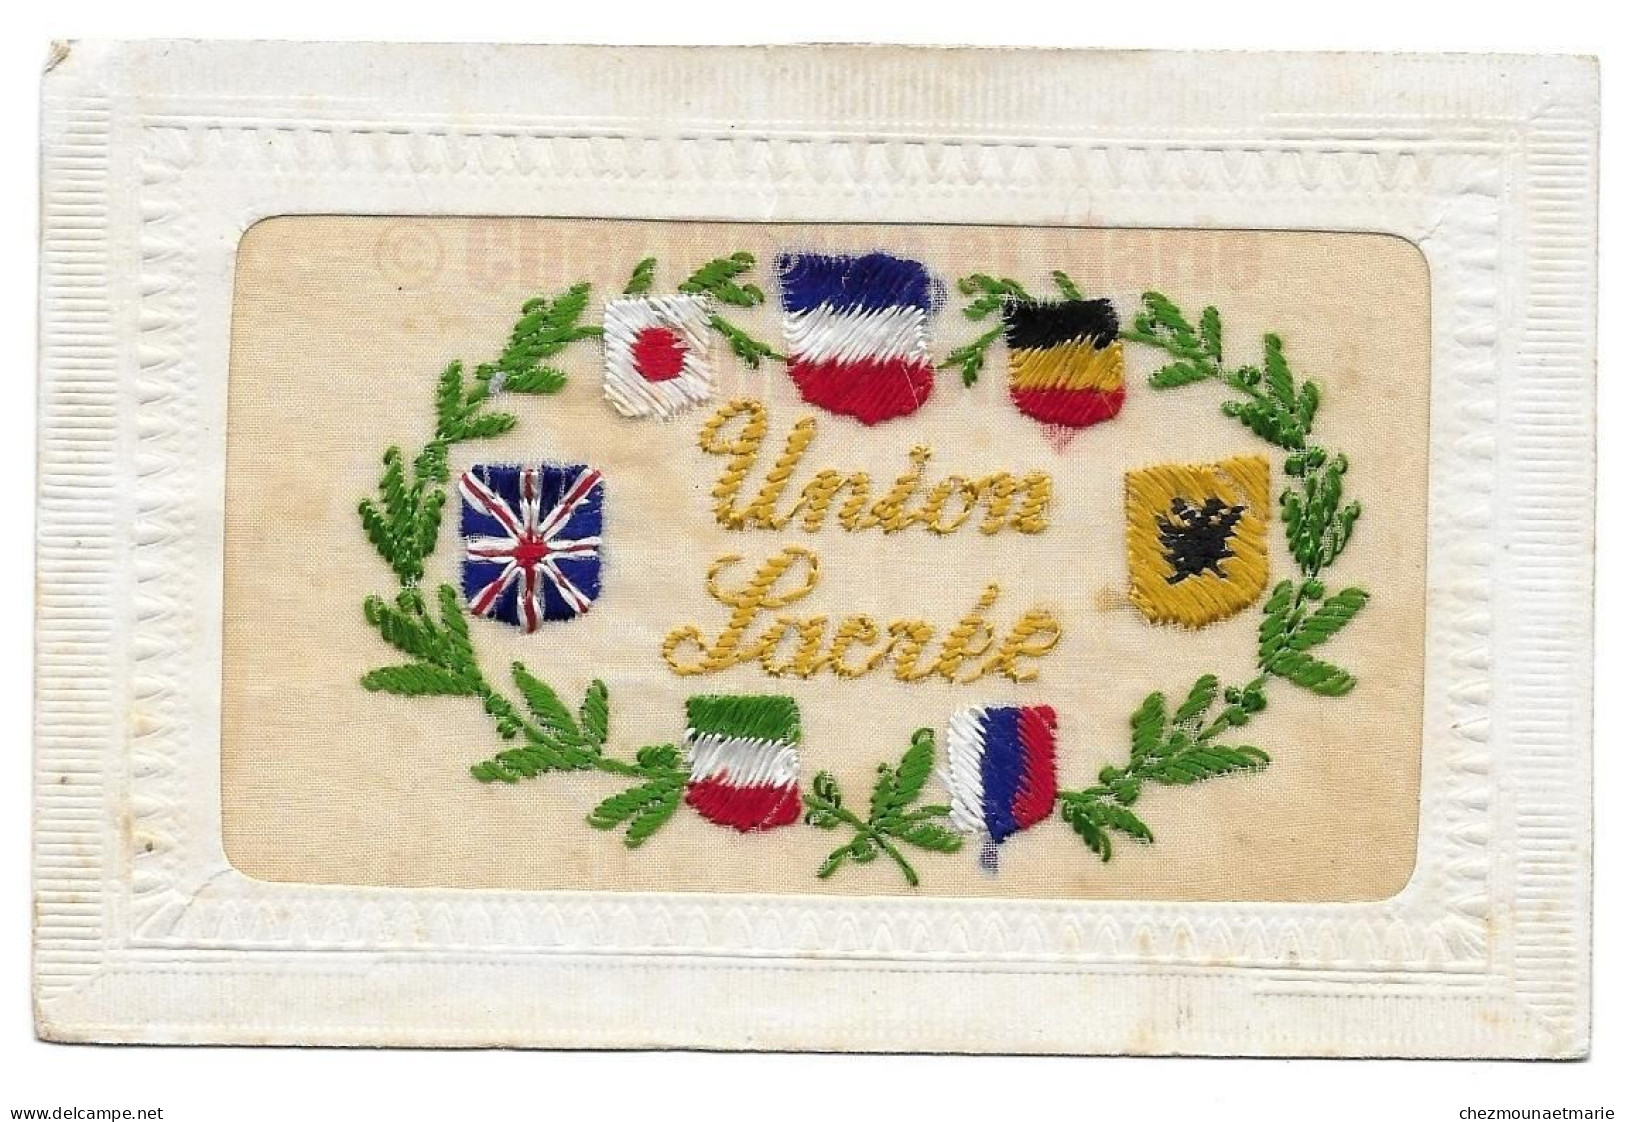 1919 BANNEIX CPA PATRIOTIQUE BRODEE UNION SACREE DRAPEAUX RUSSIE JAPON ALLEMAGNE ETC... - Guerre 1914-18